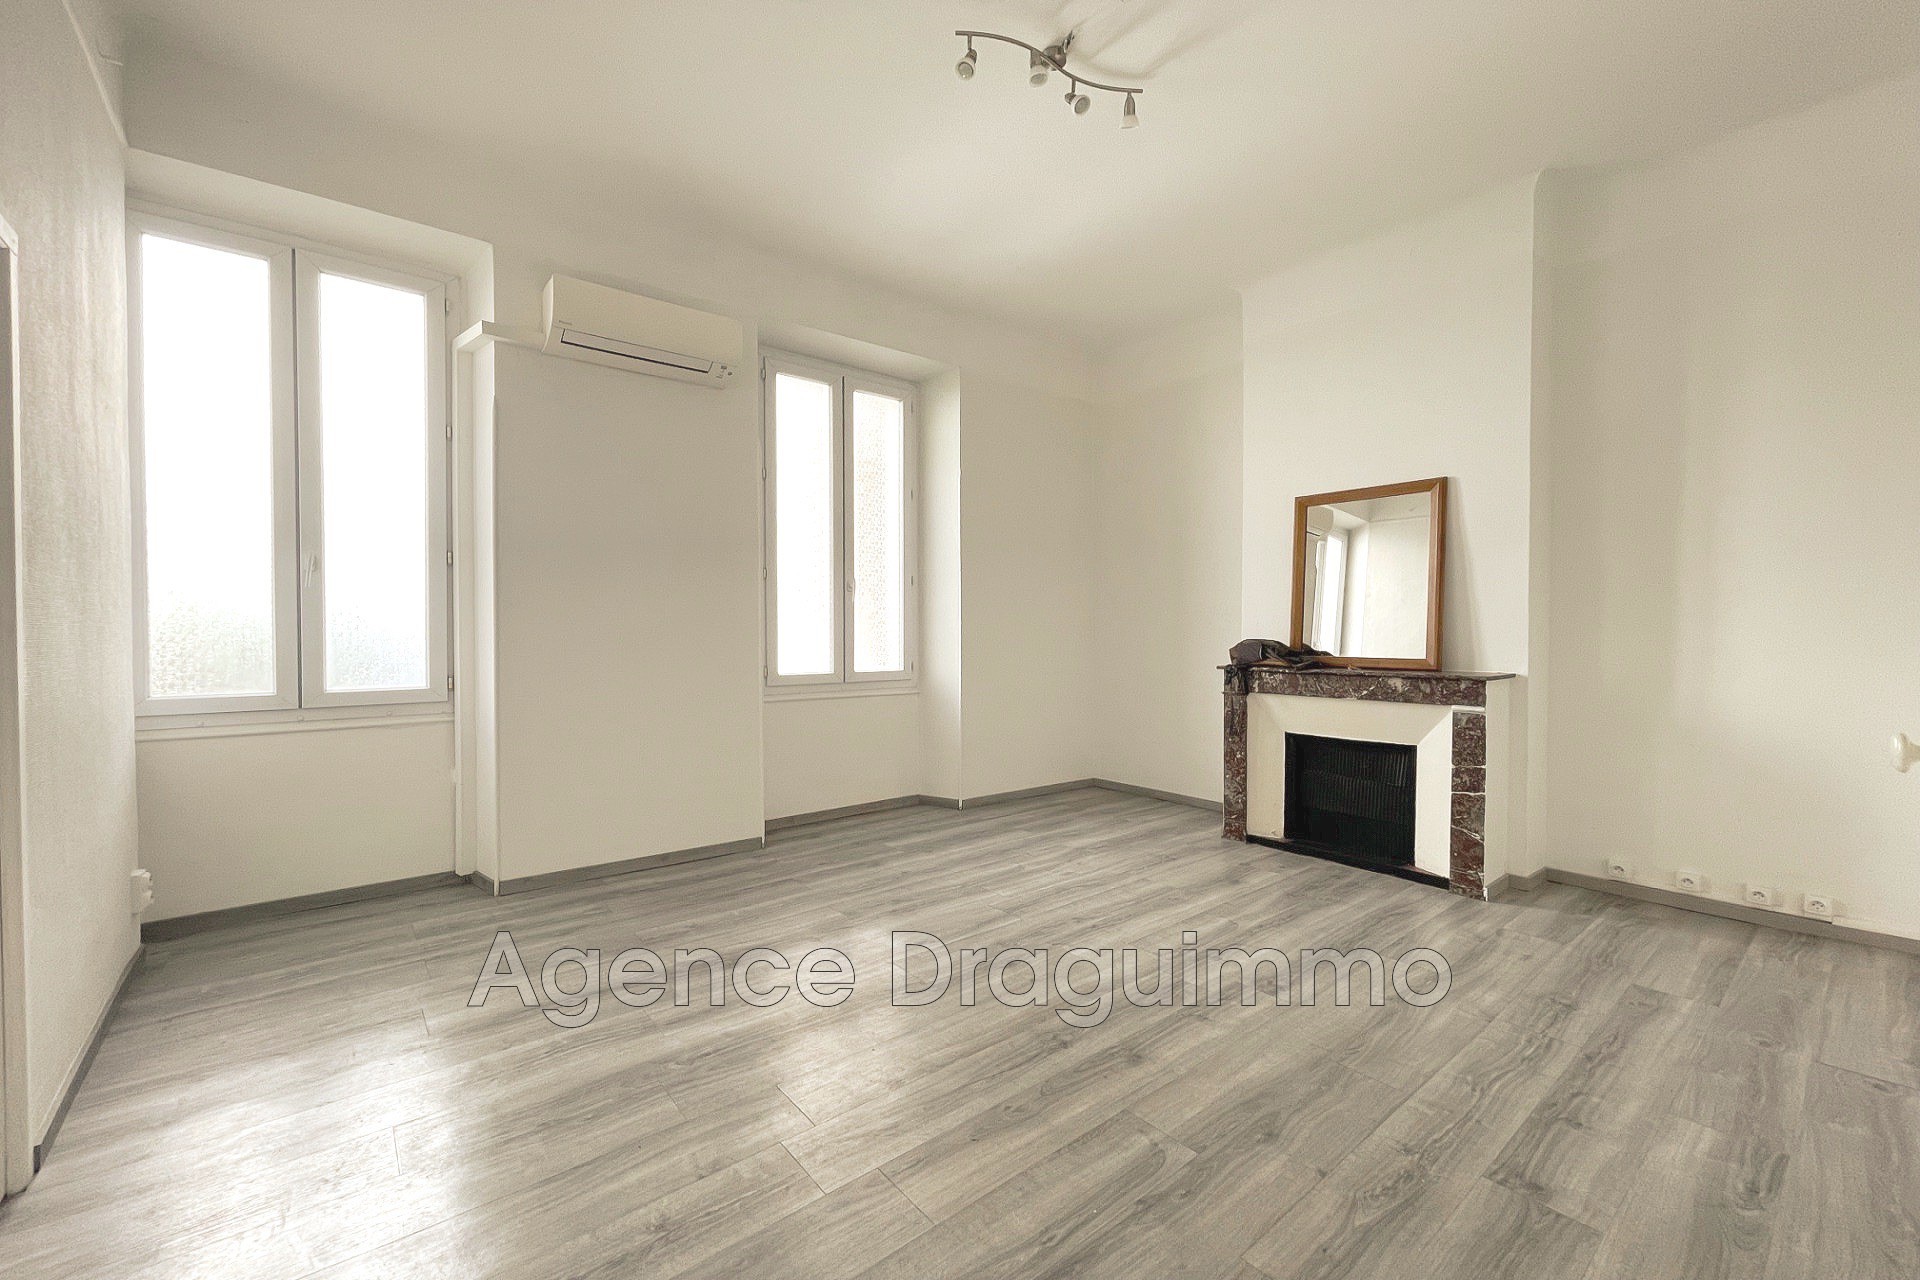 Vente Appartement 61m² 3 Pièces à Draguignan (83300) - Agence Draguimmo